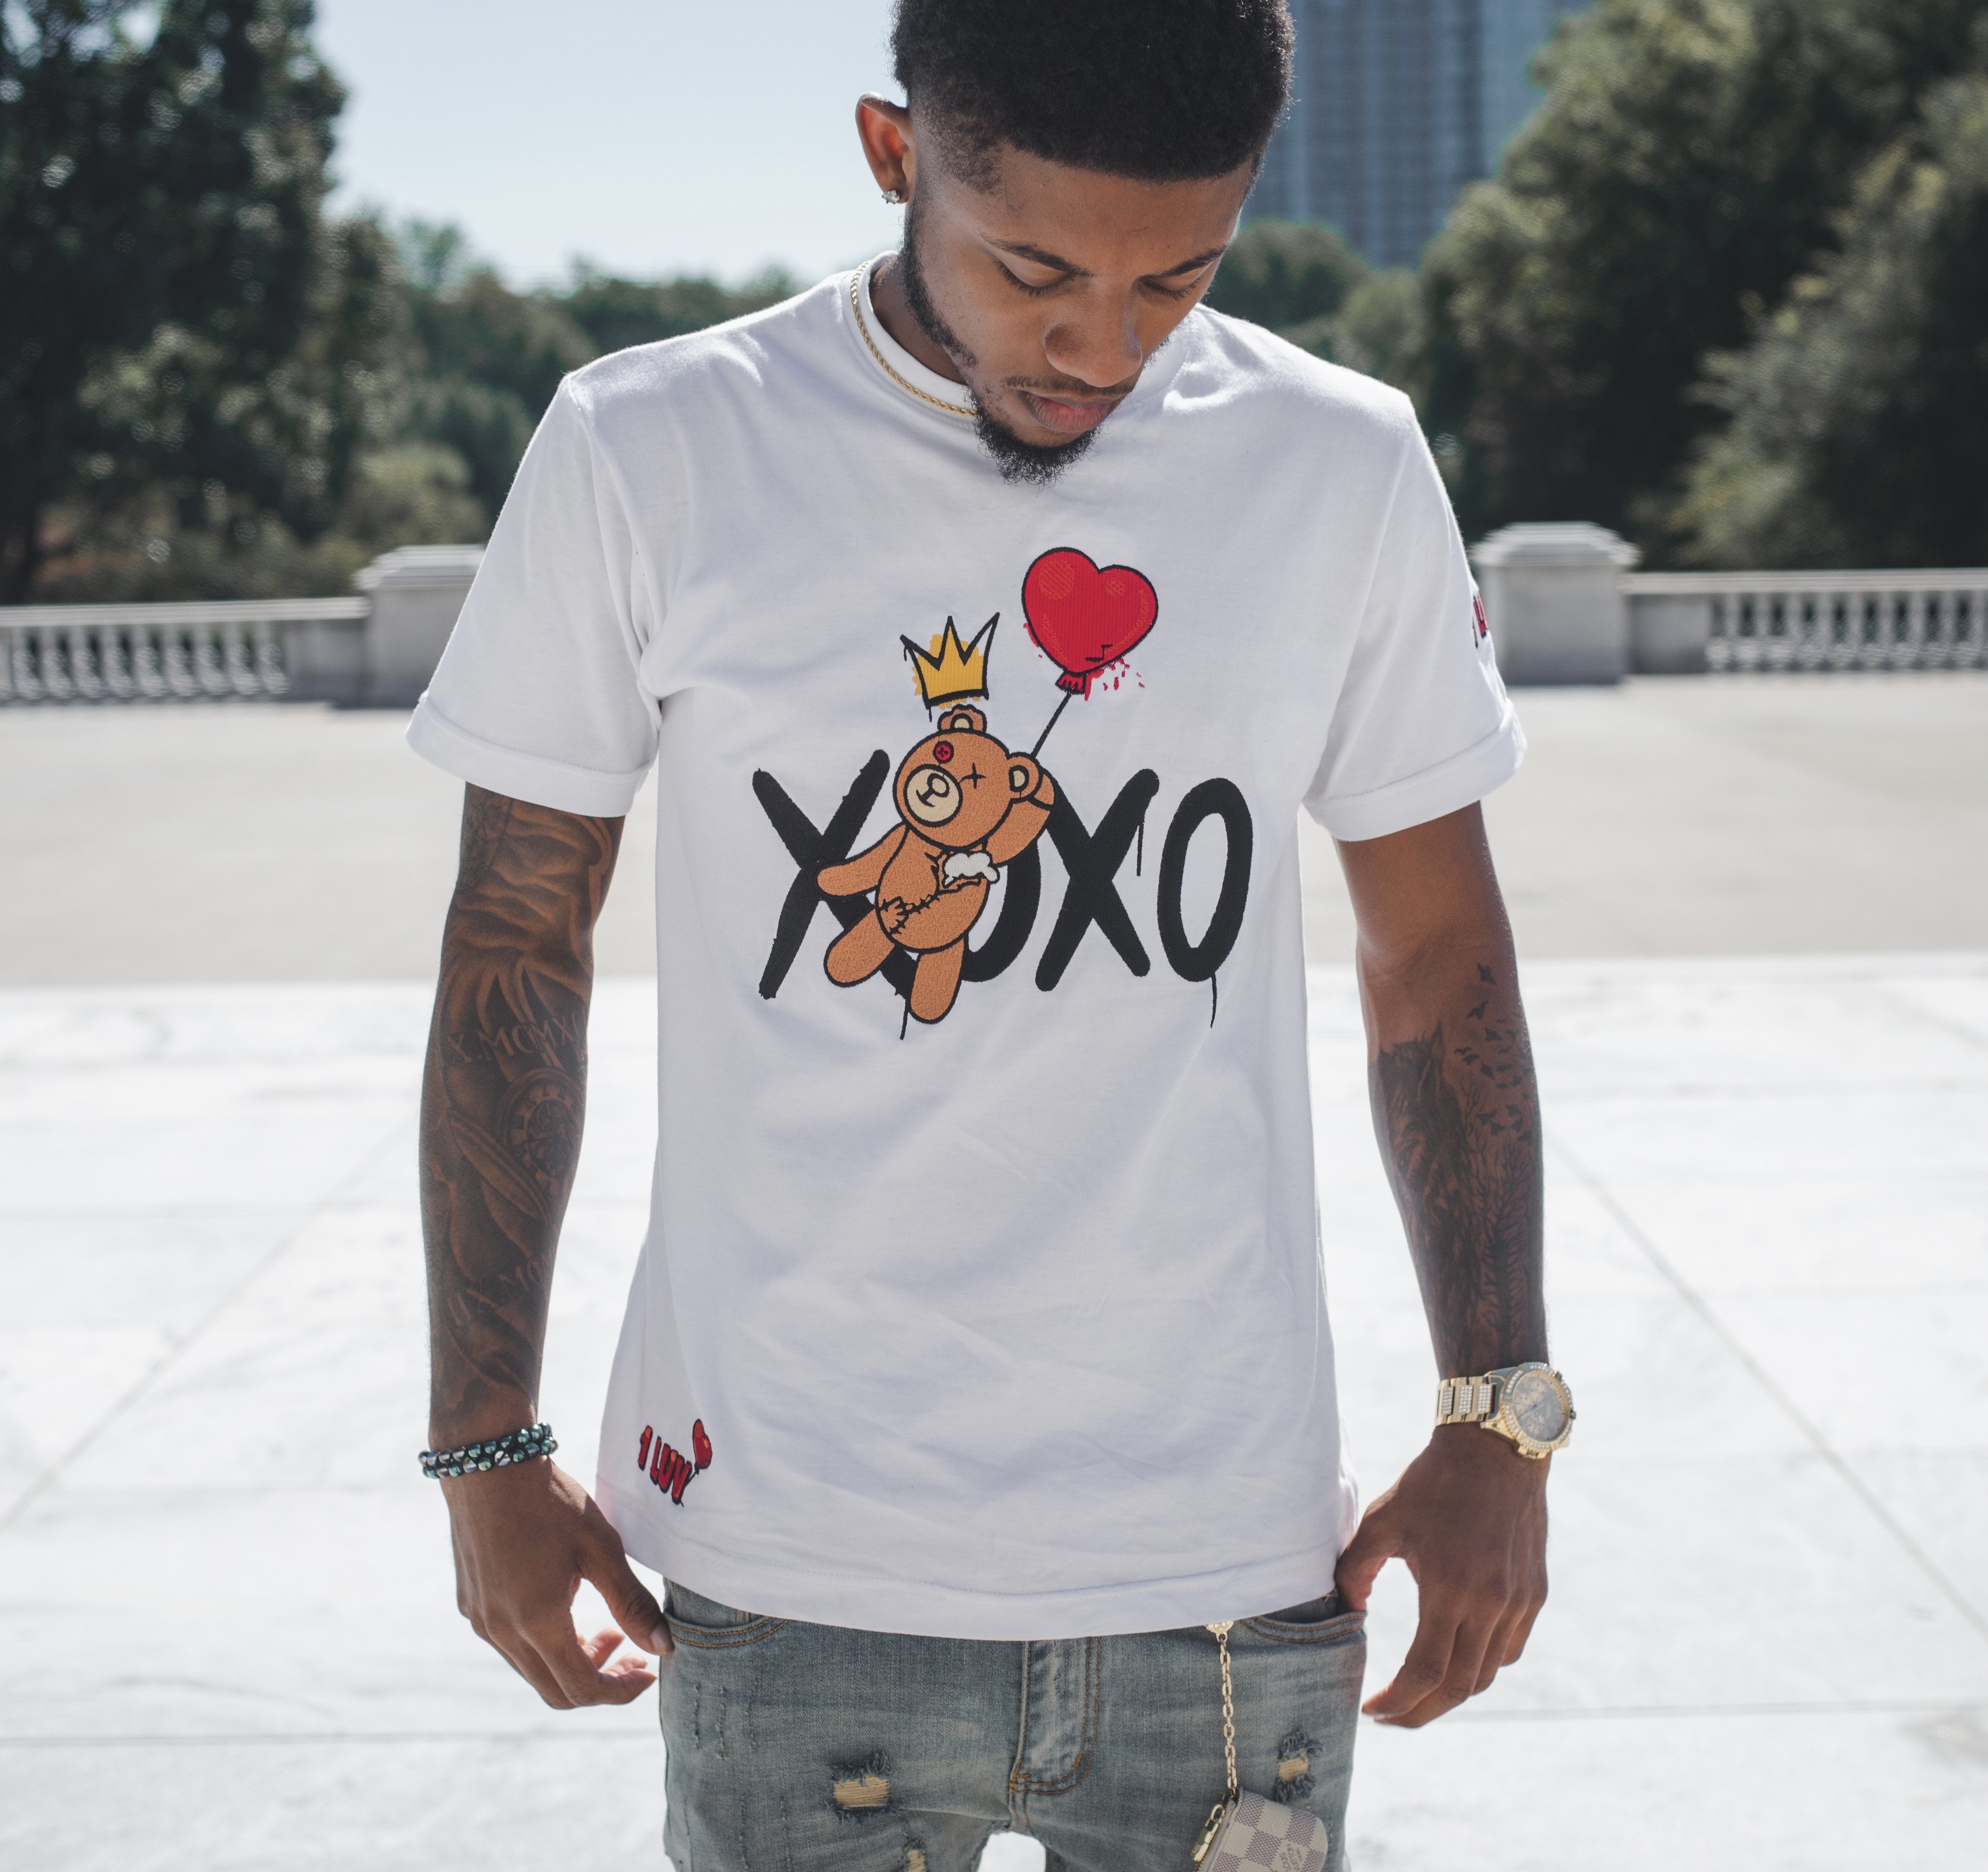 1Luv "XOXO" Shirt